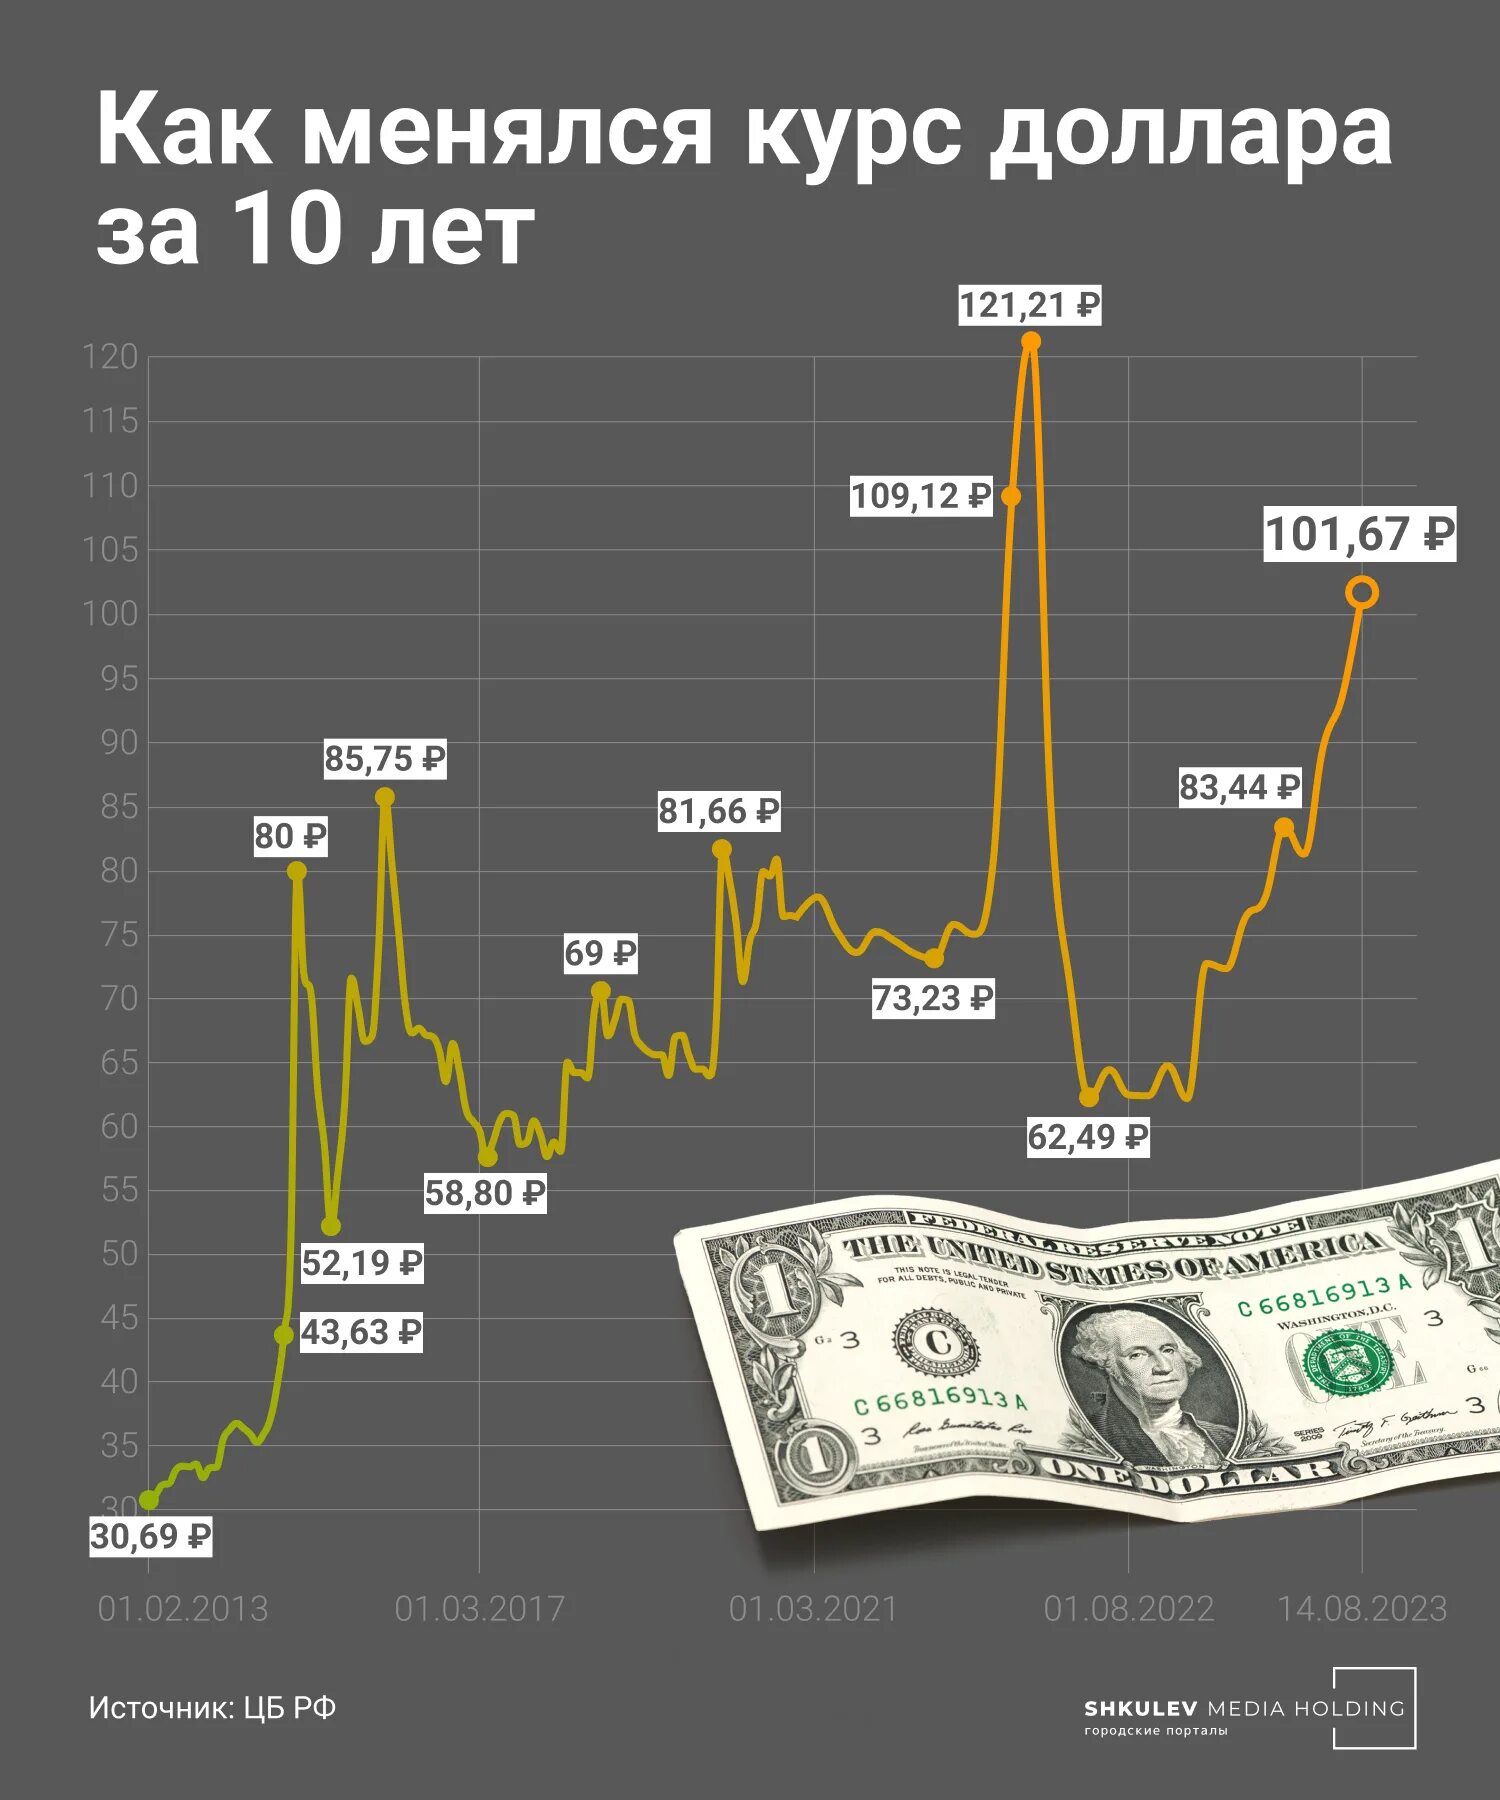 Почему доллар мировая валюта. Почему доллар дешевле